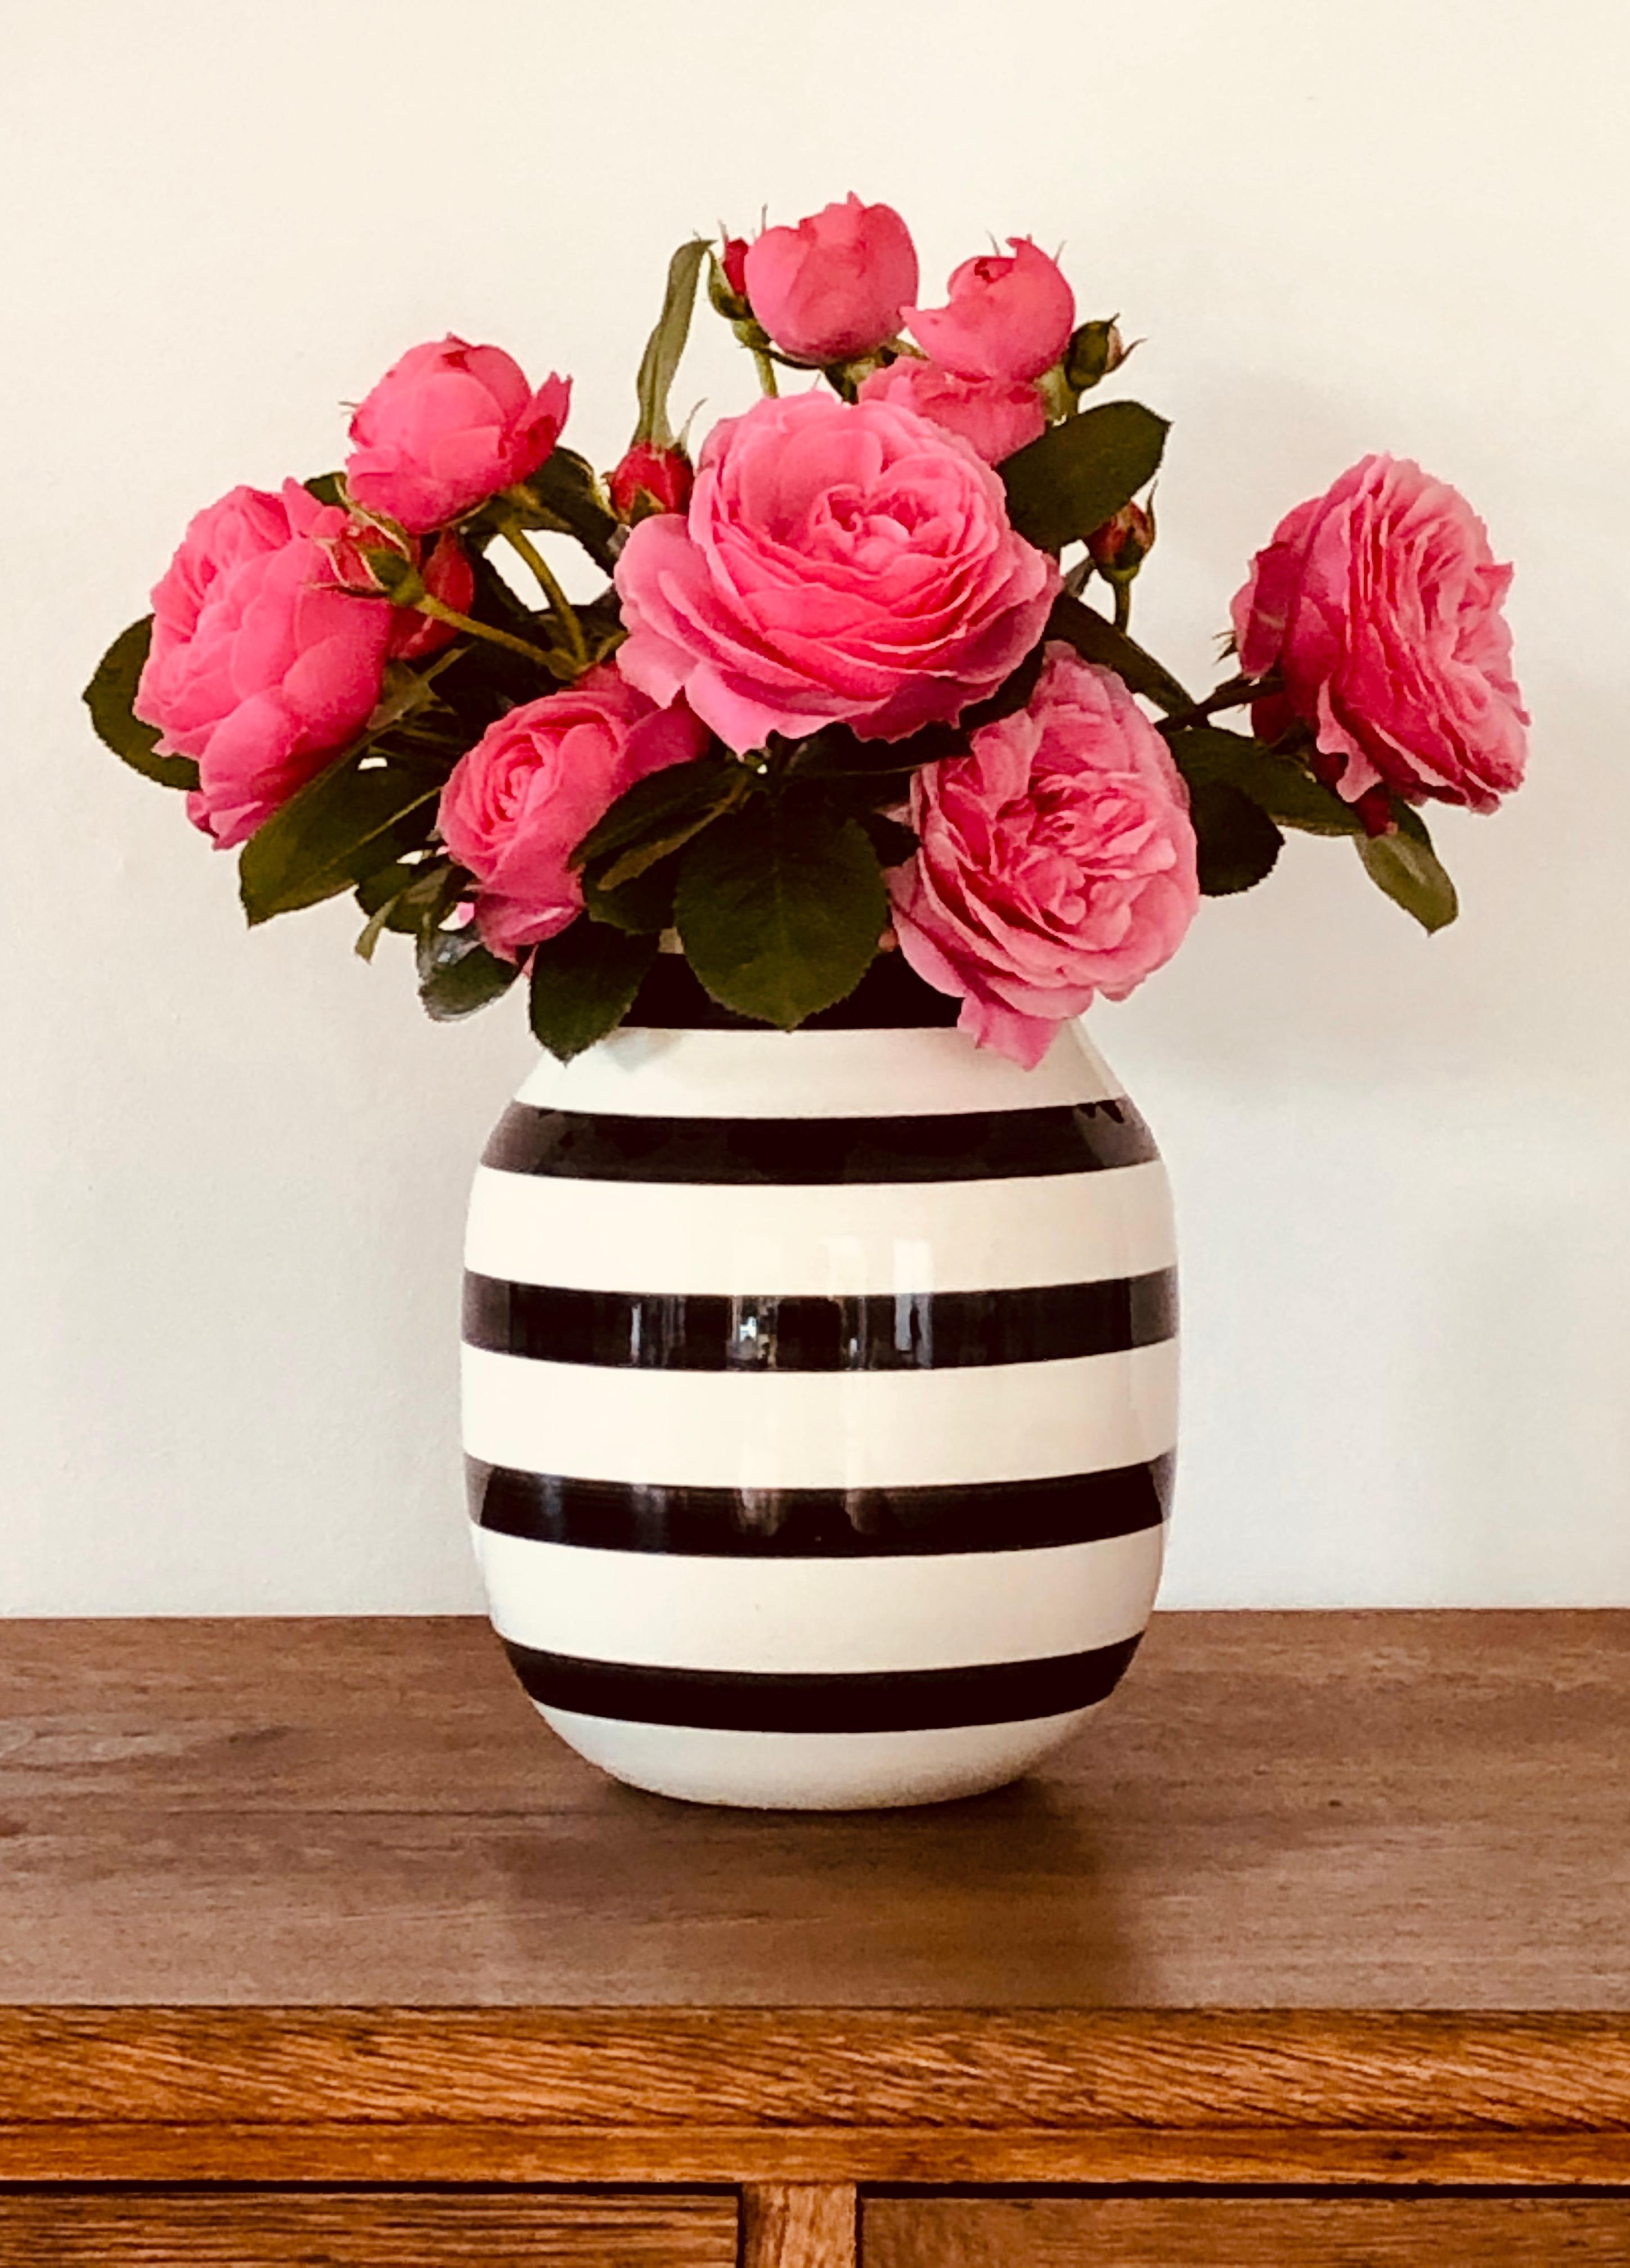 Schönes Wochenende!
#gartenrosen #Vasenliebe #blumenglück #rosen